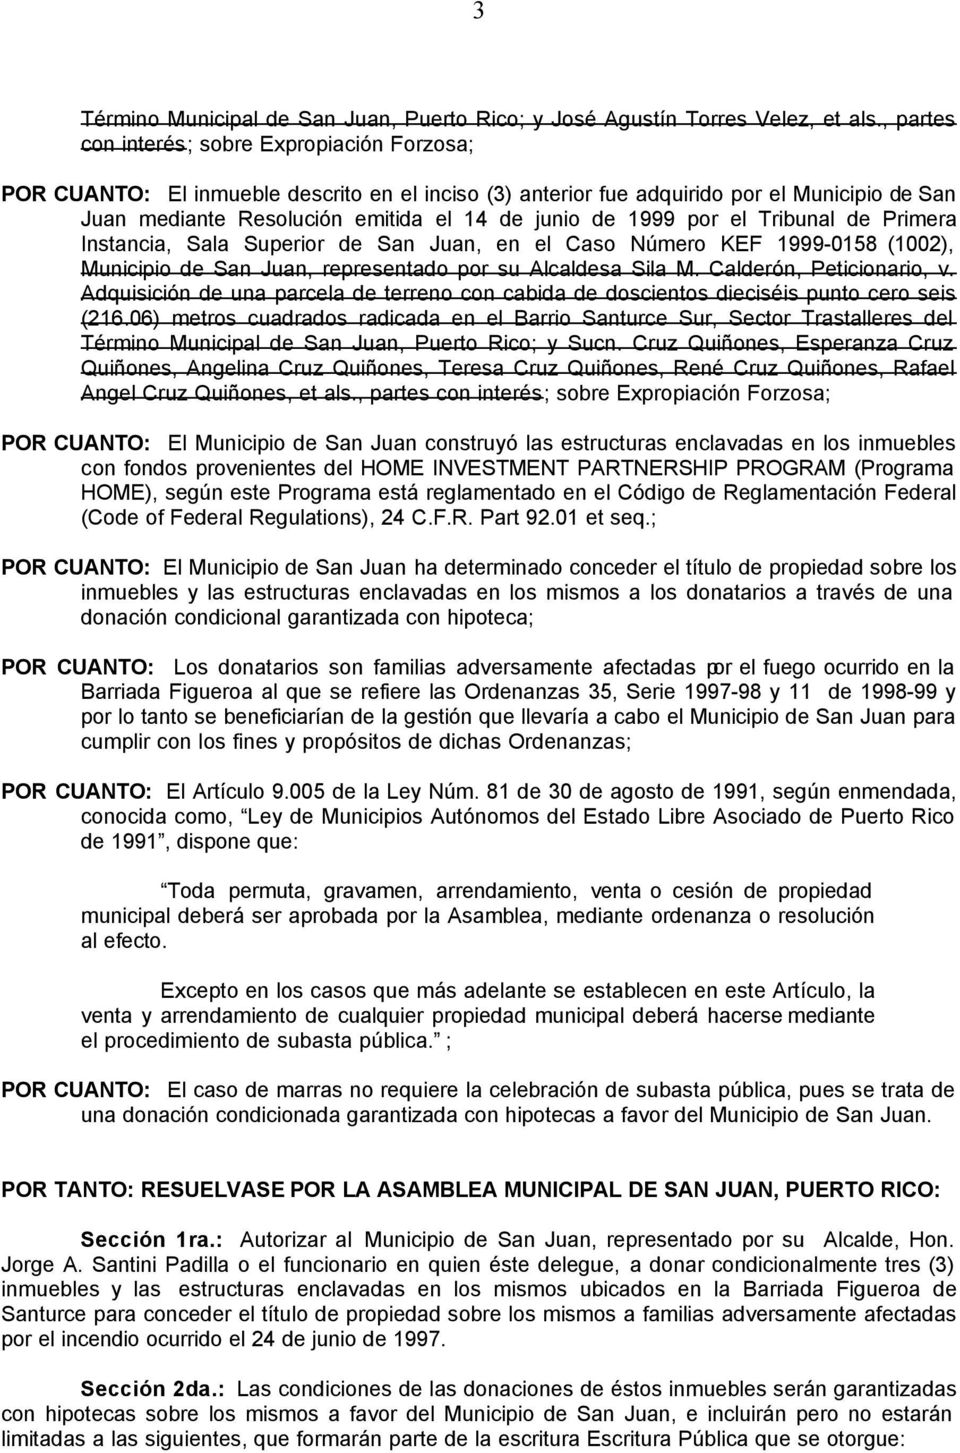 1999 por el Tribunal de Primera Instancia, Sala Superior de San Juan, en el Caso Número KEF 1999-0158 (1002), Municipio de San Juan, representado por su Alcaldesa Sila M. Calderón, Peticionario, v.